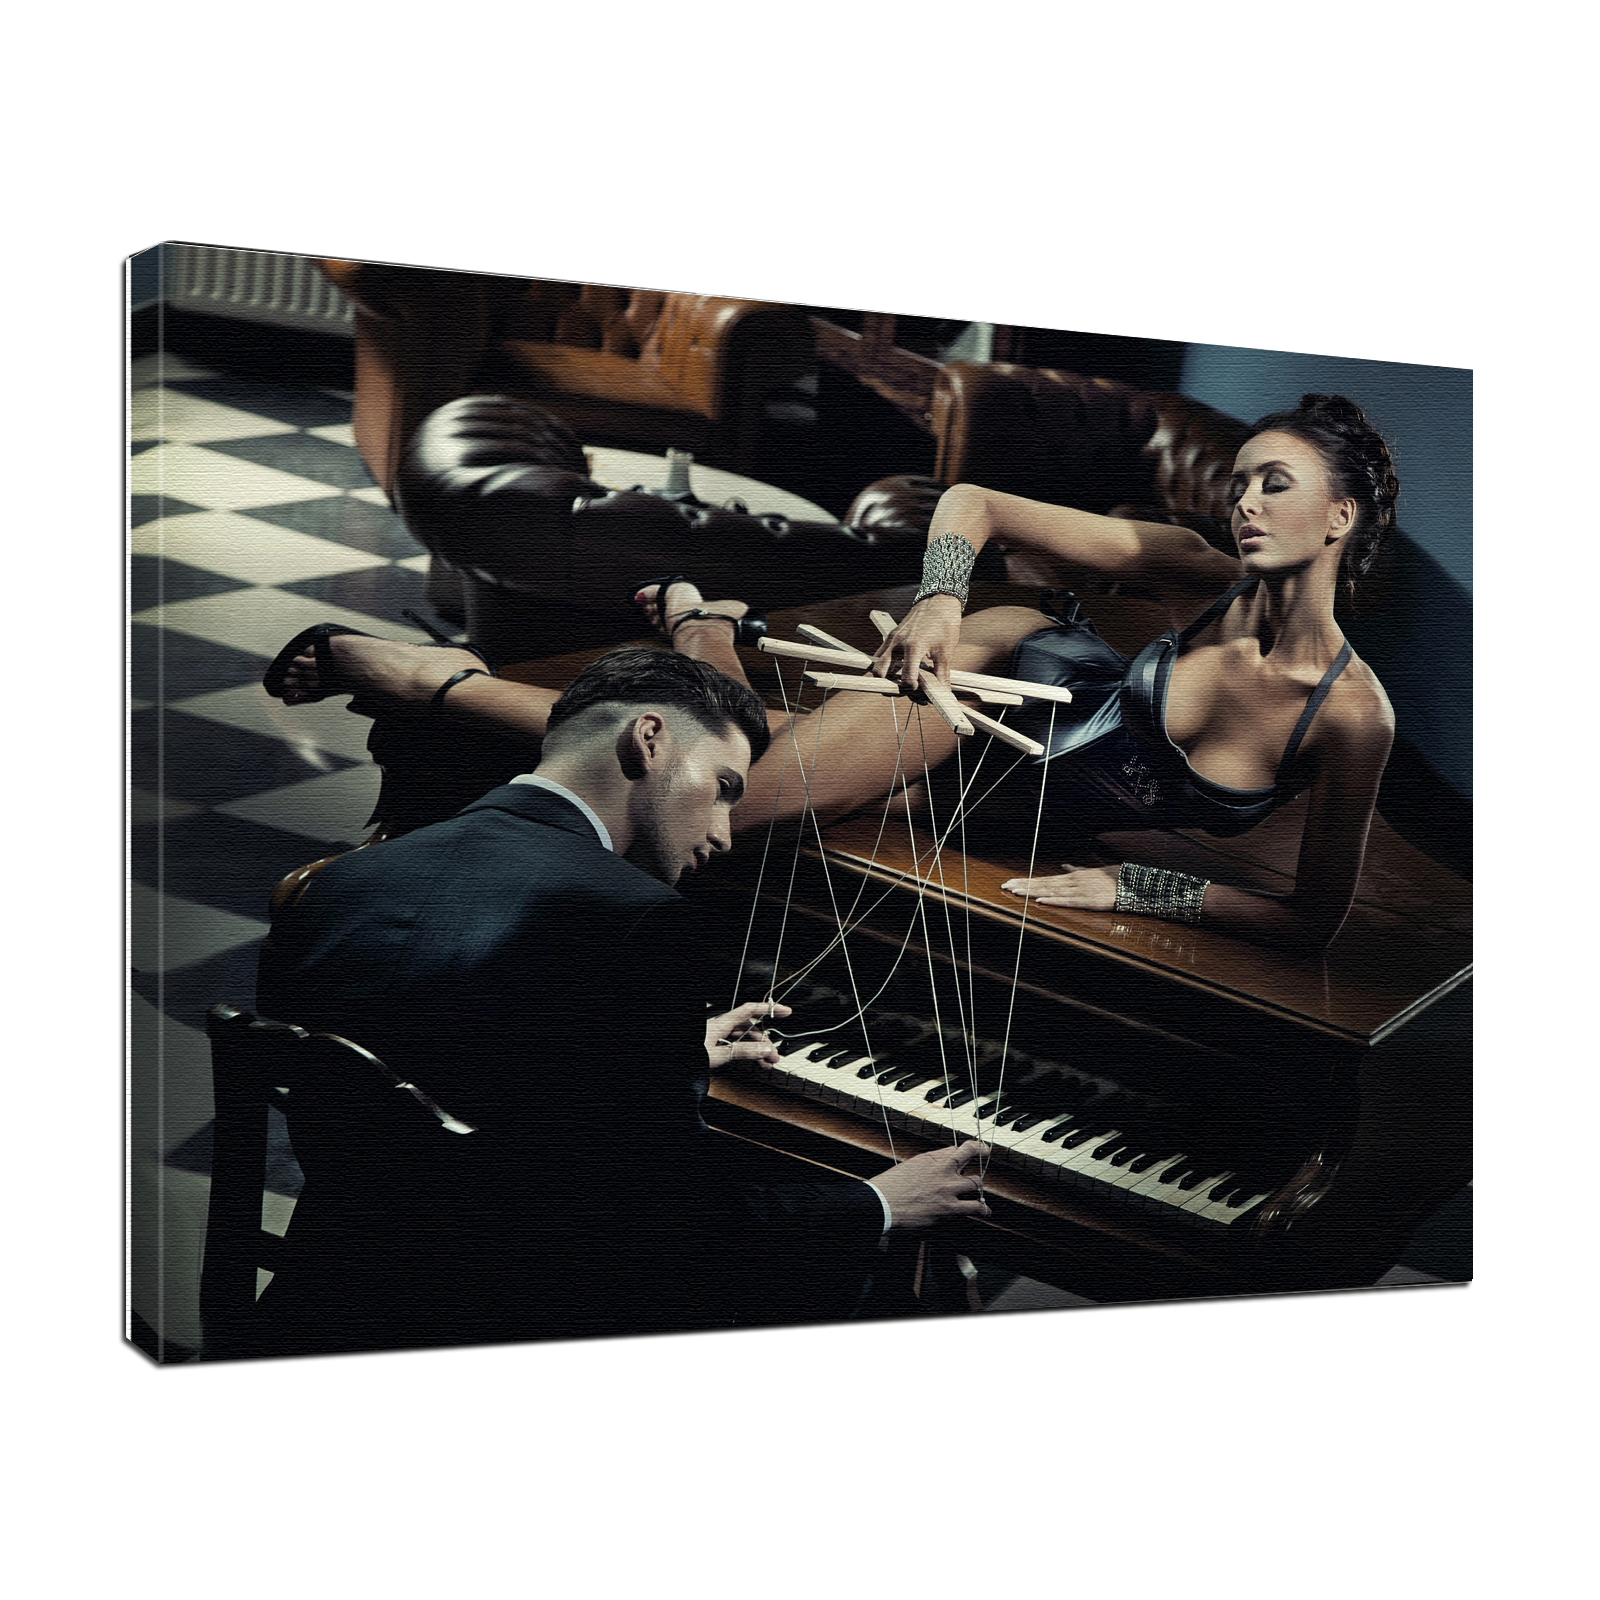 Leinwandbild Bild Erotik Piano Player sepia, schwarz/weiß, color